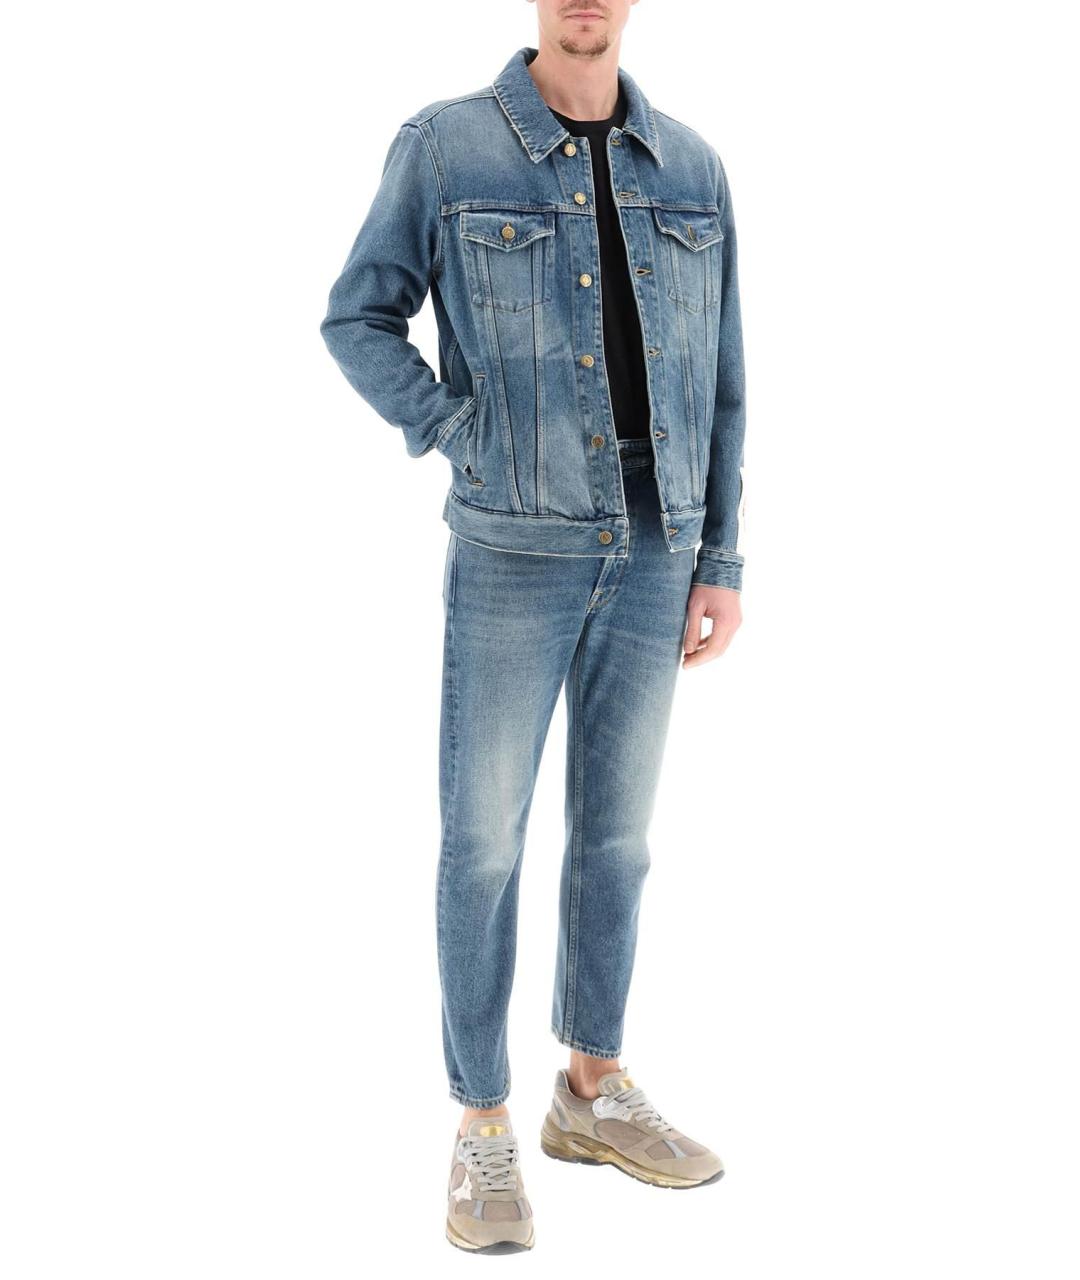 Прямые джинсы GOLDEN GOOSE DELUXE BRAND для мужчин купить за 27620 руб,арт. 1201995 – Интернет-магазин Oskelly